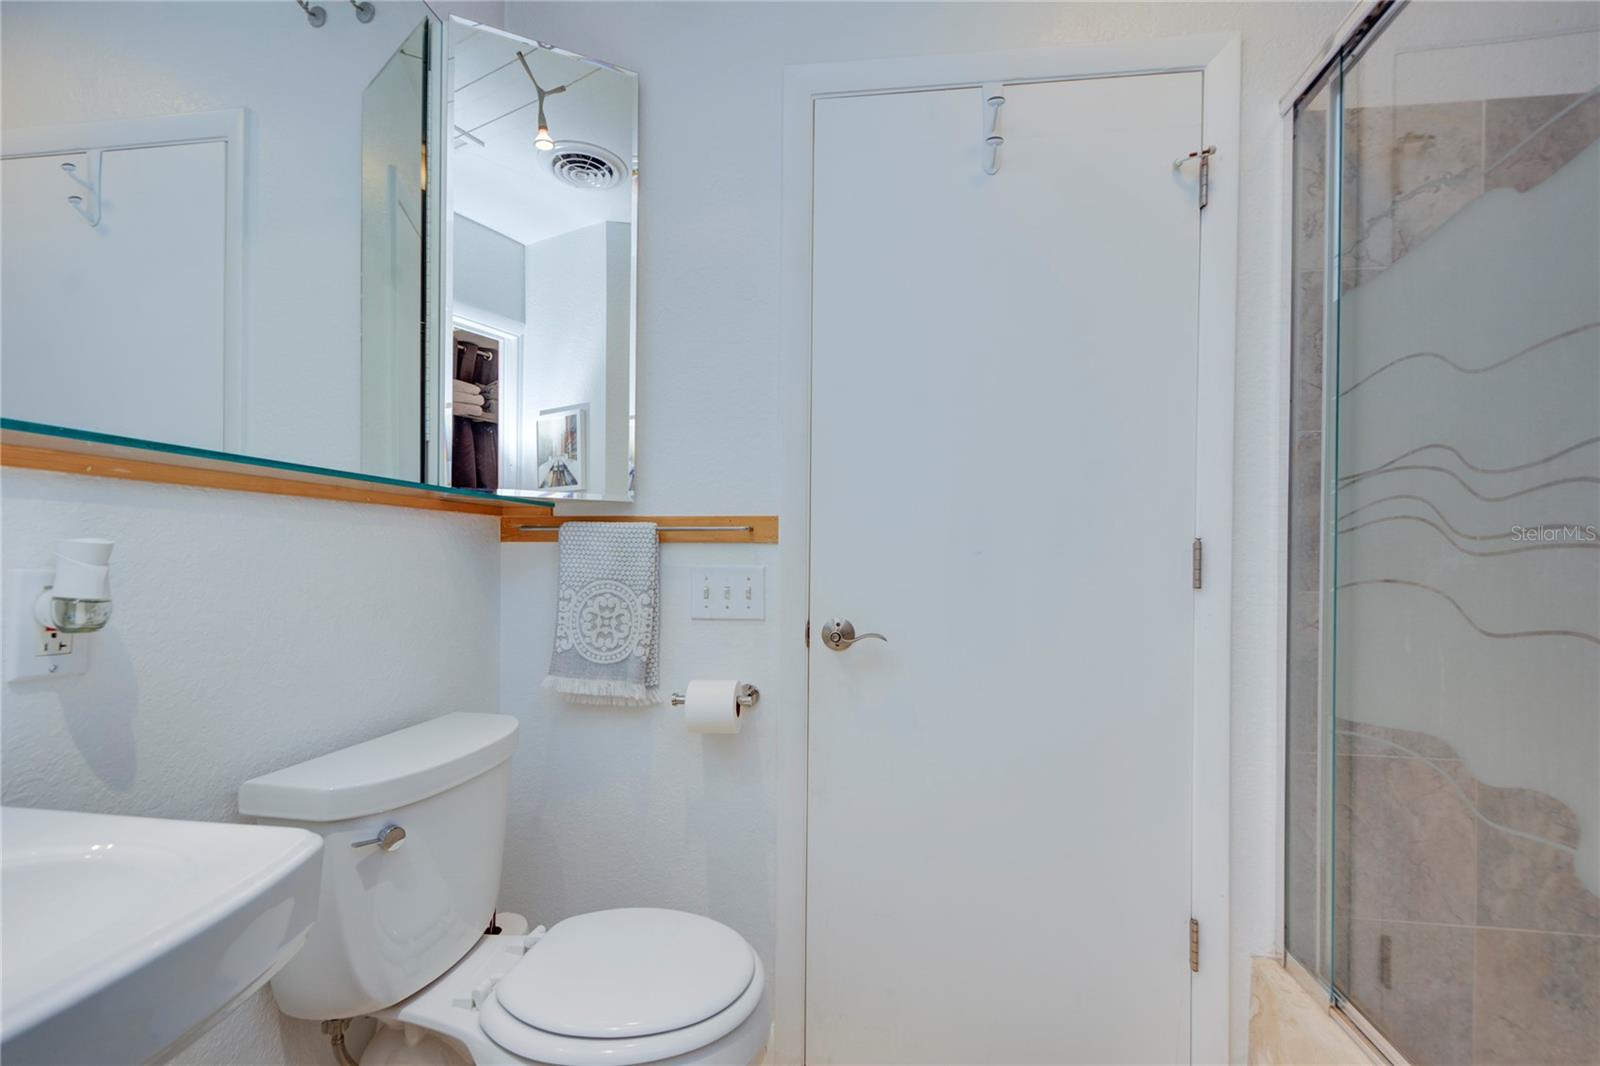 Hallway Bathroom with walk-in shower (pocket door attaches bathrooms)